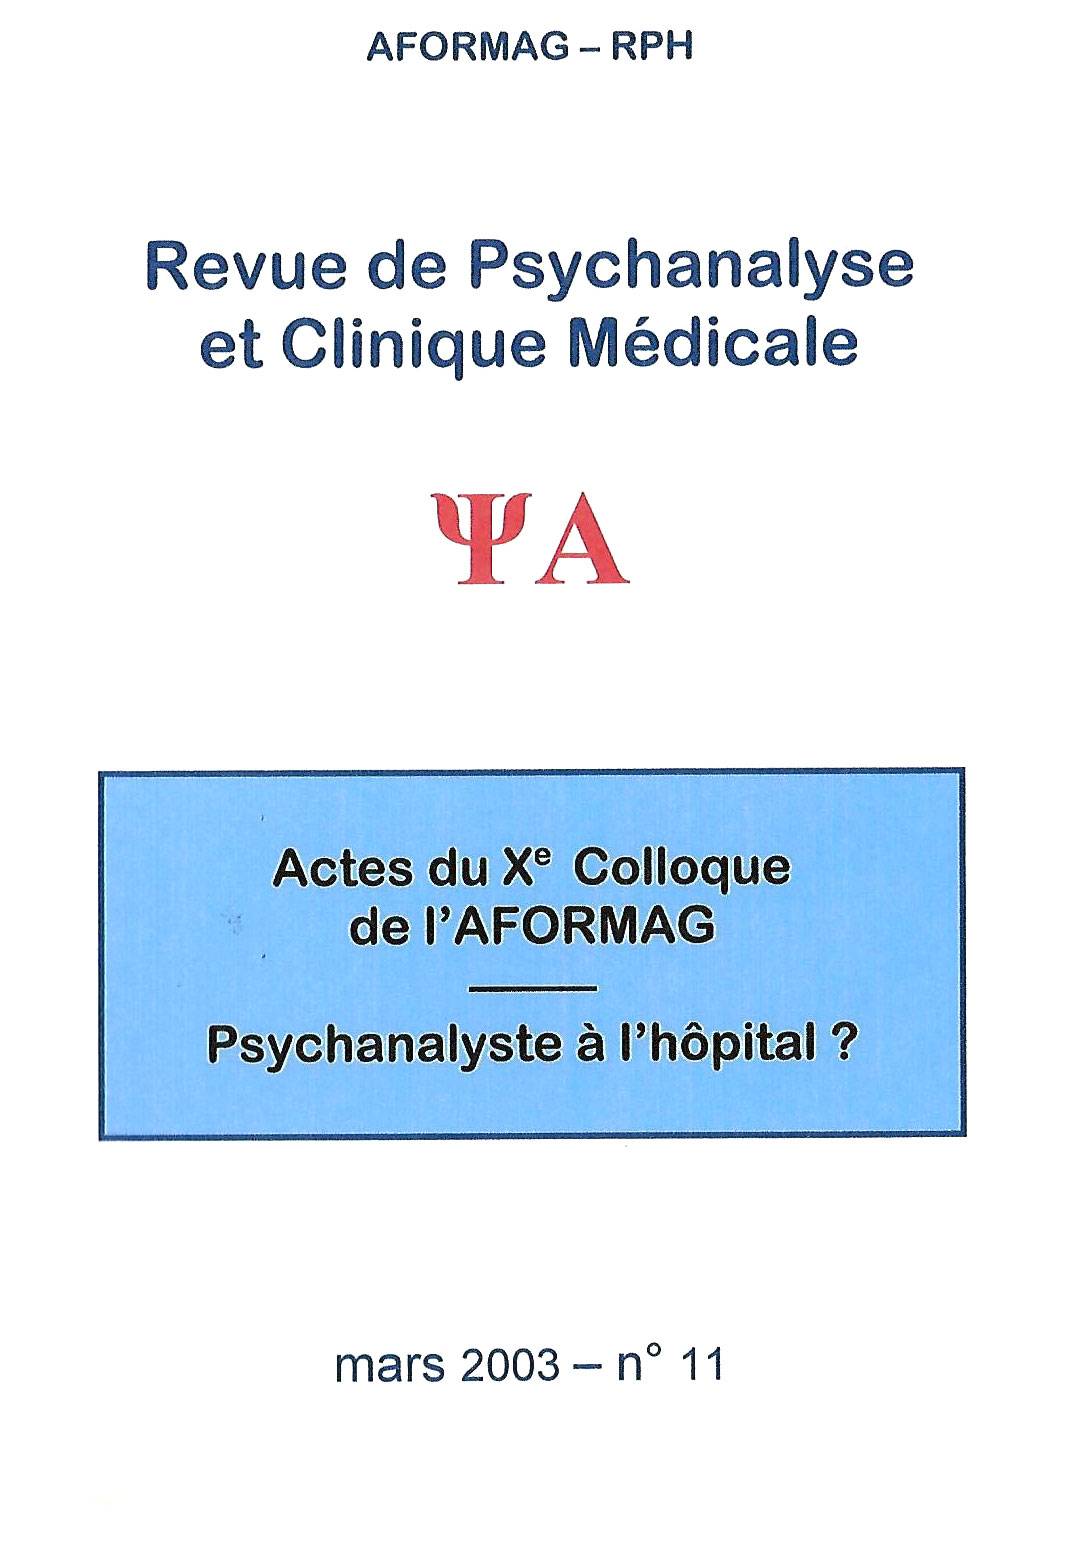 Consulter un psychanalyste à Paris